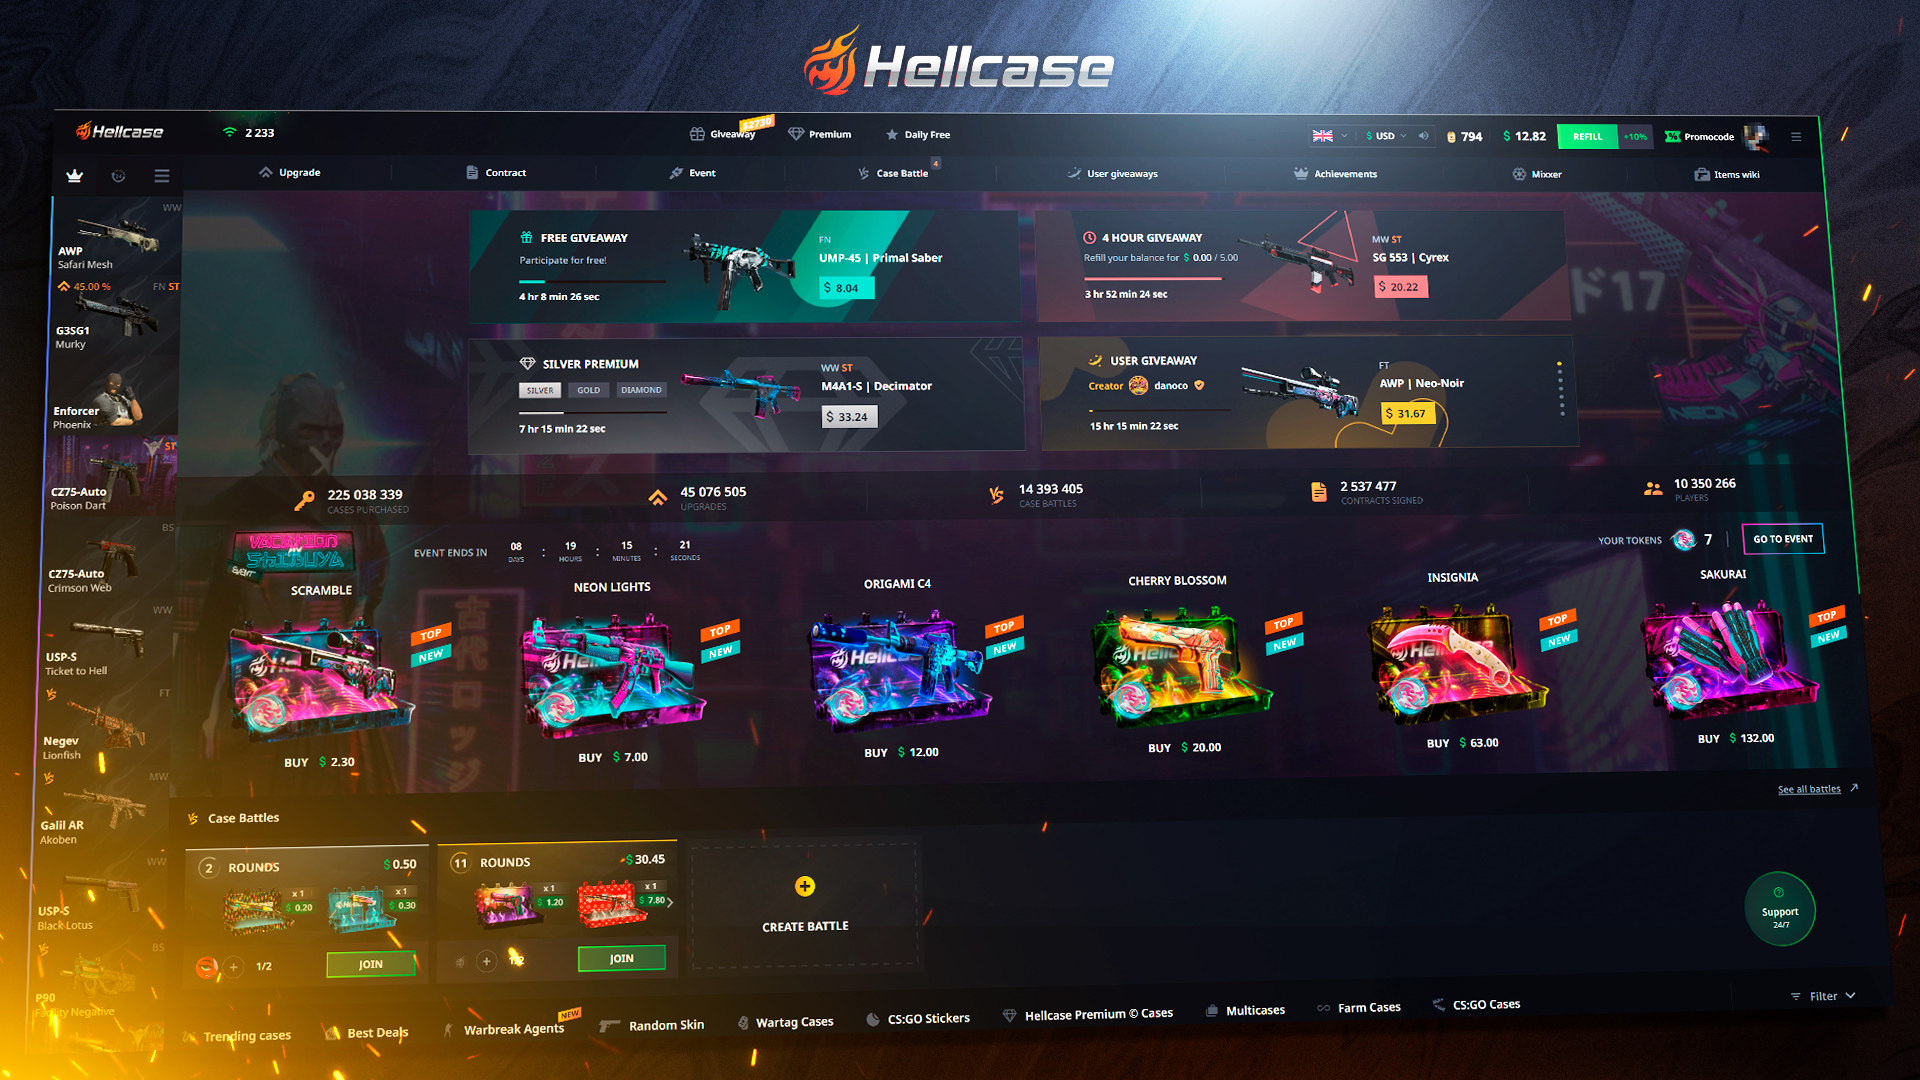 Hellcase.com 20 USD Wallet Card Code